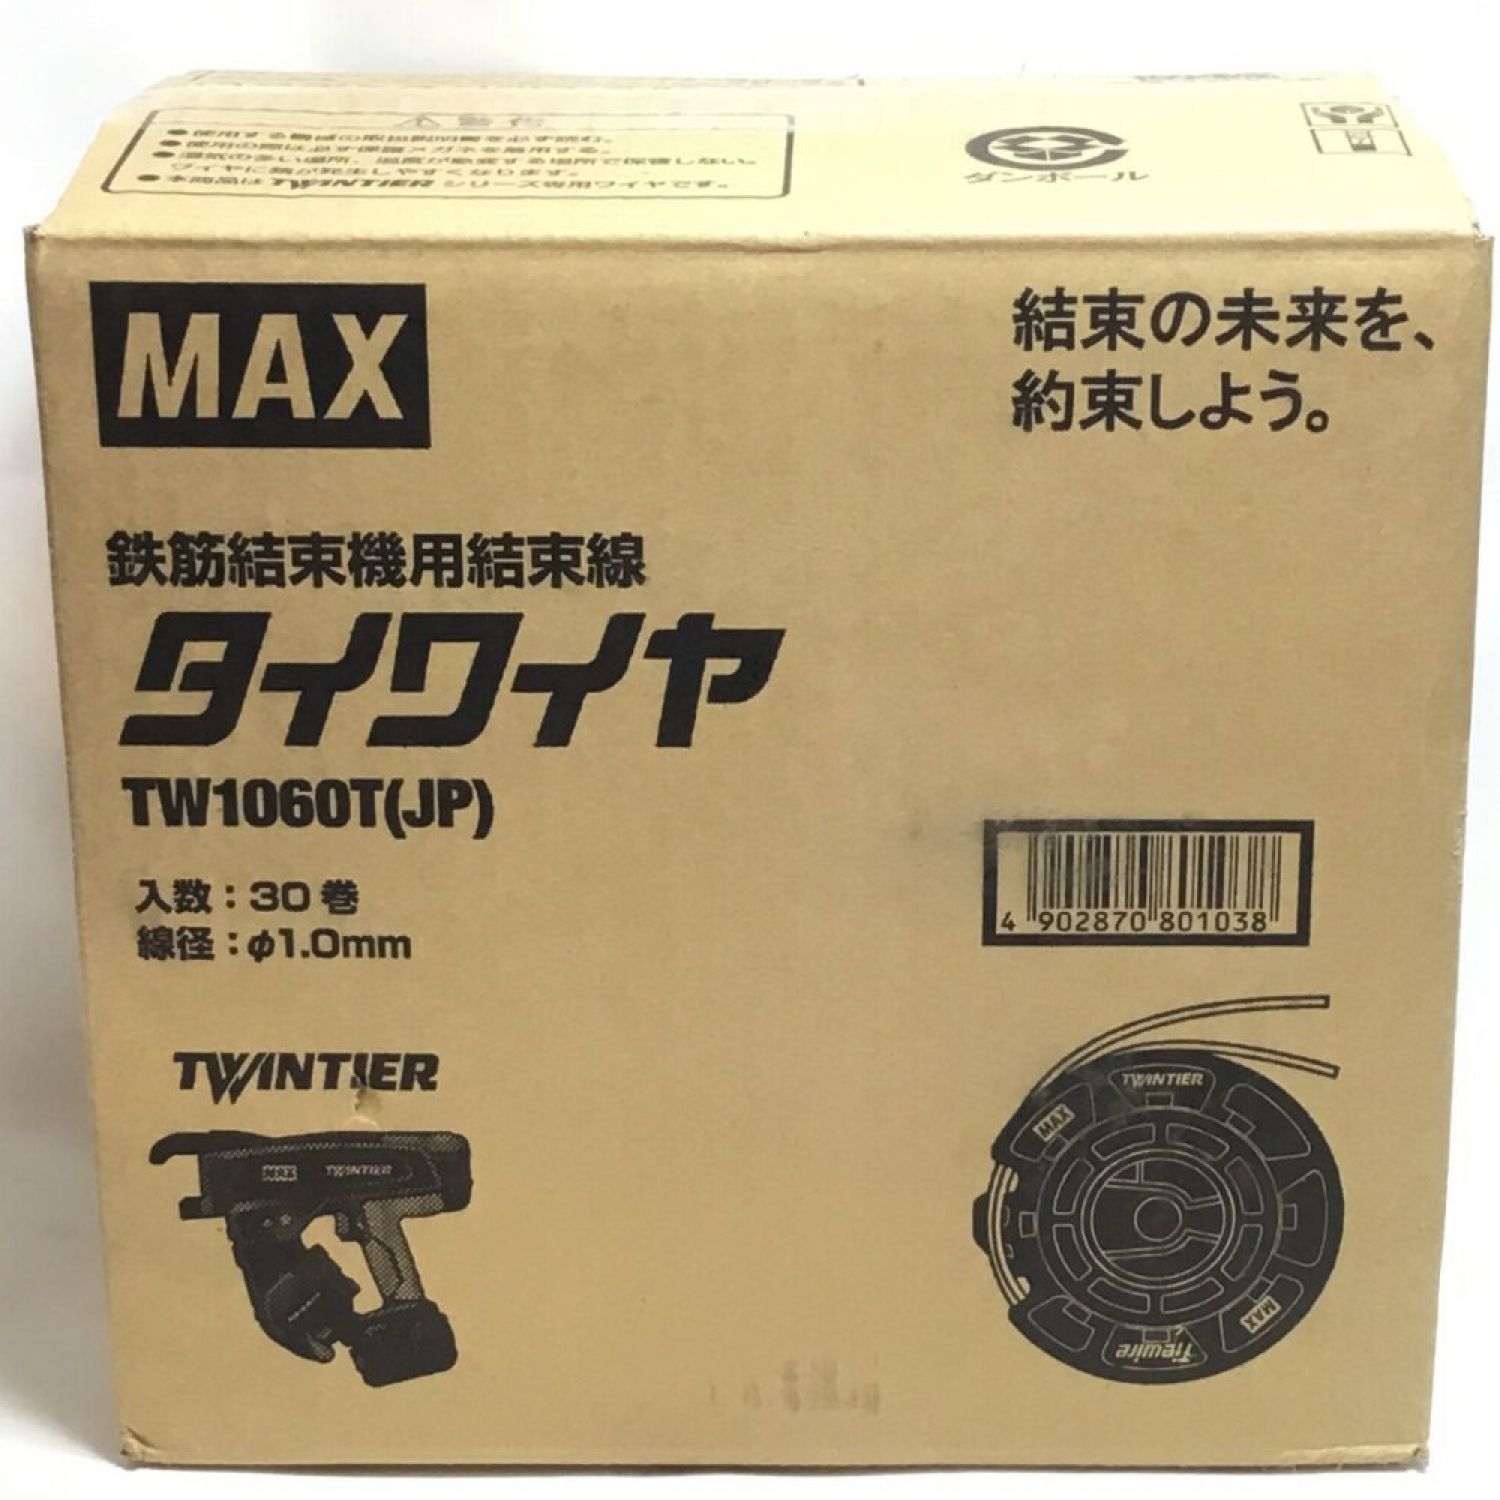 中古】 MAX マックス タイワイヤ 30巻入 未使用品(S) TW1060T Sランク